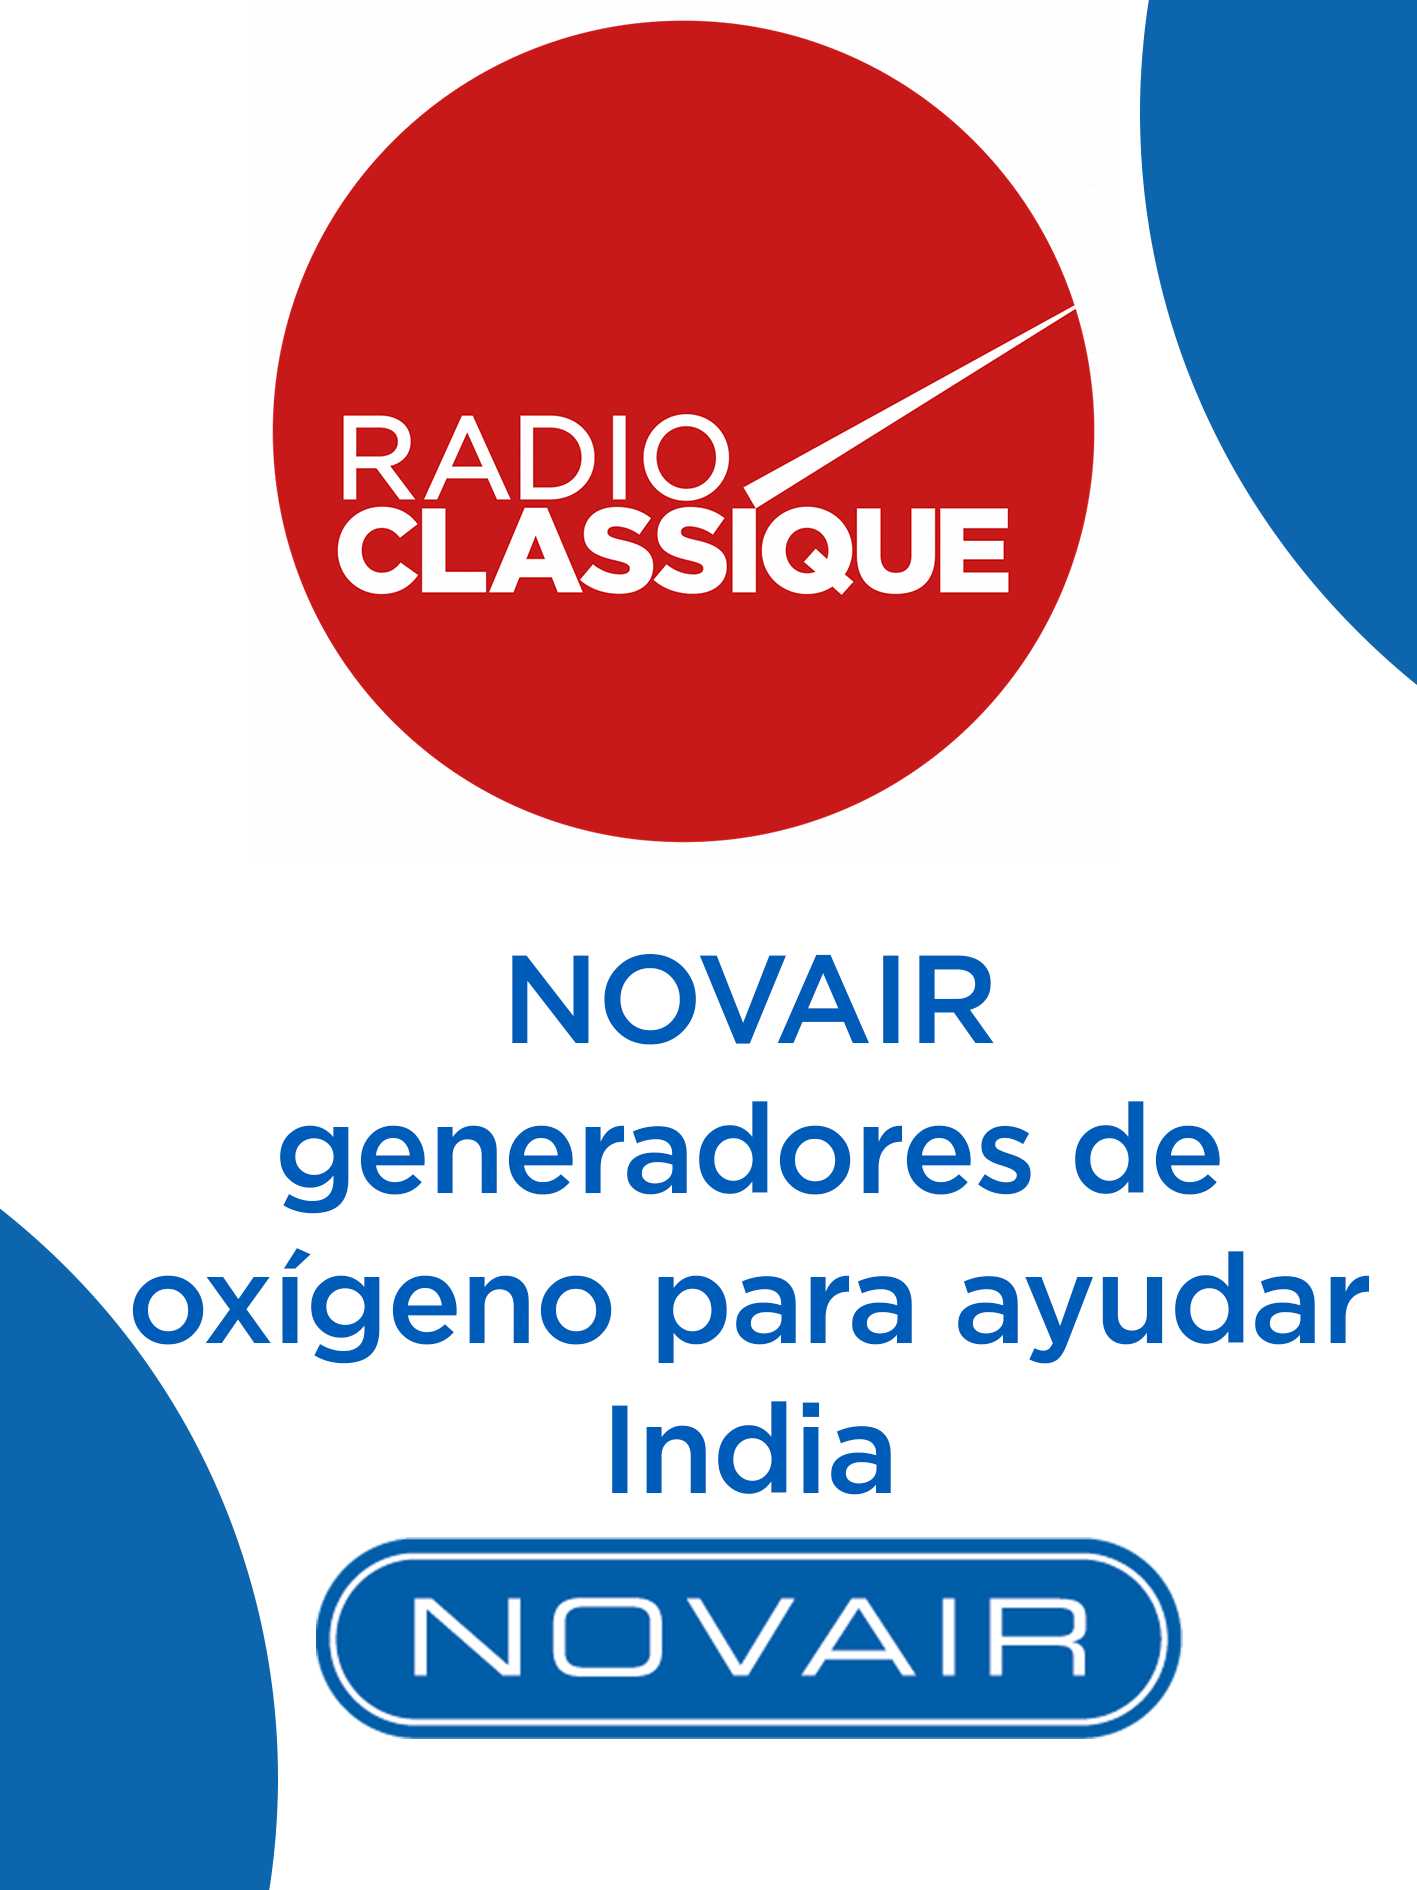 Entrevista radiofónica clásica - Los generadores de oxígeno de NOVAIR ayudarán a la India